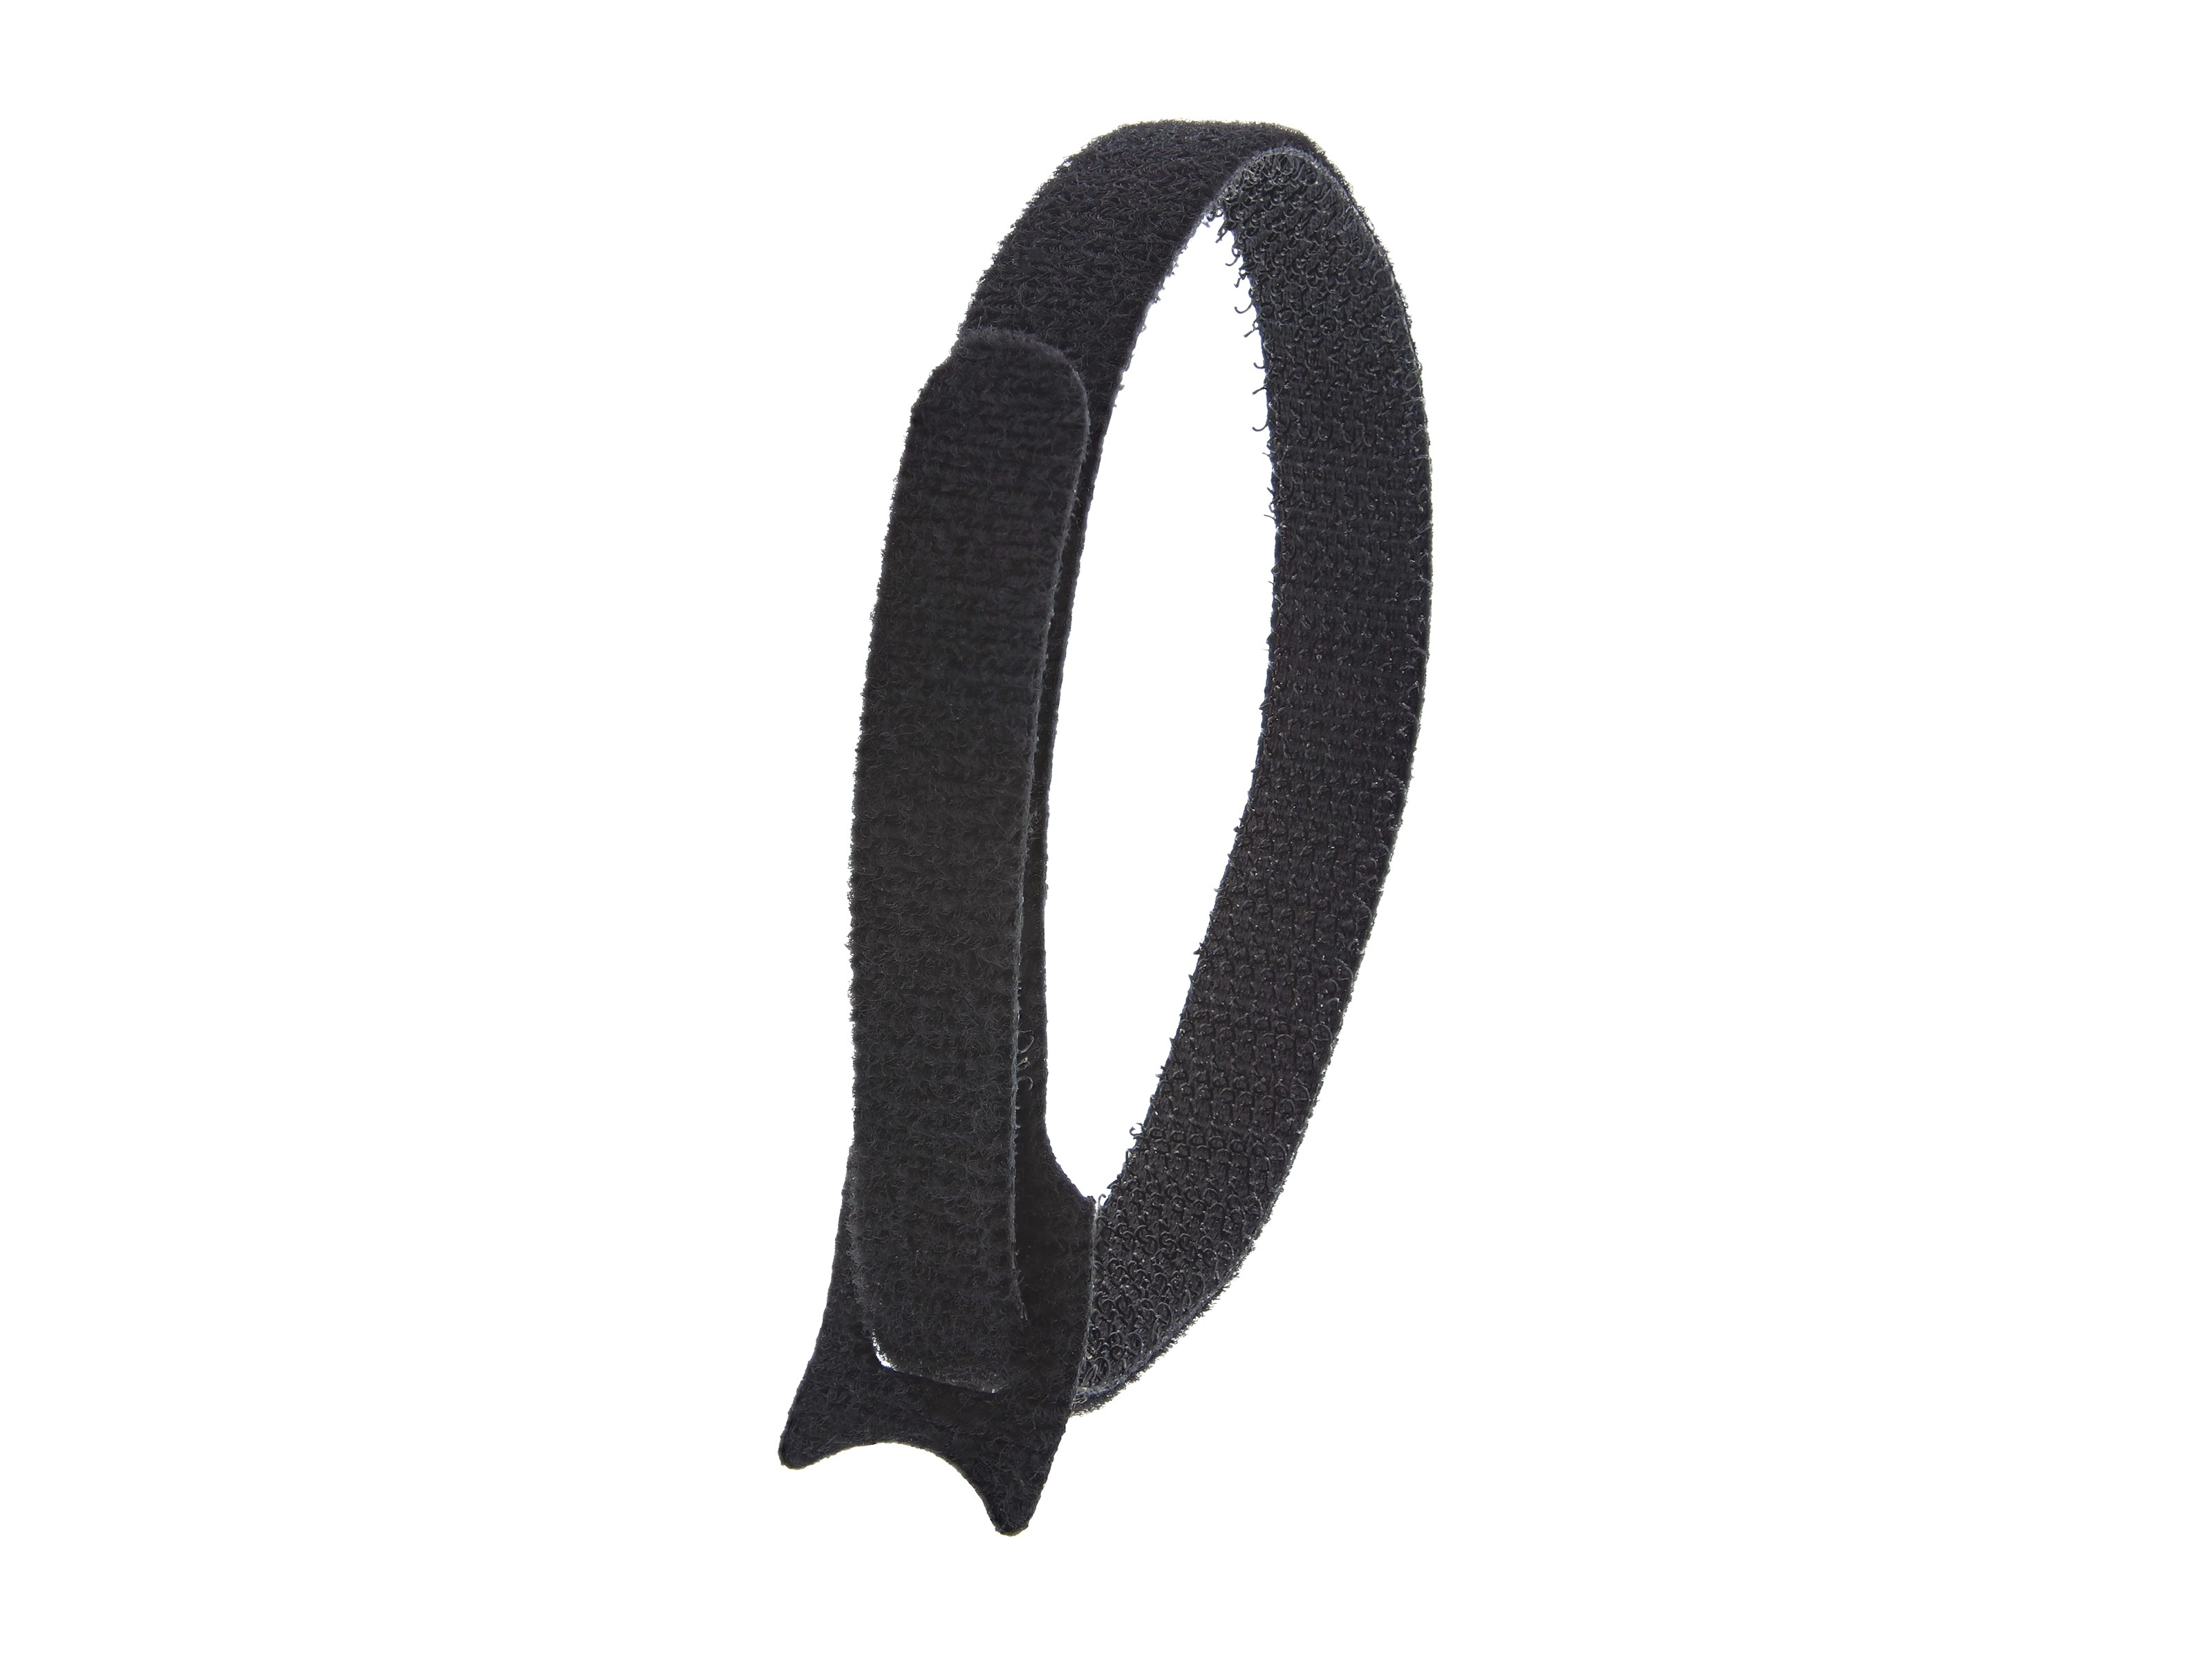 Secure Cable Ties 8 inch Black Hook and Loop Tie Wrap - 50 Pack